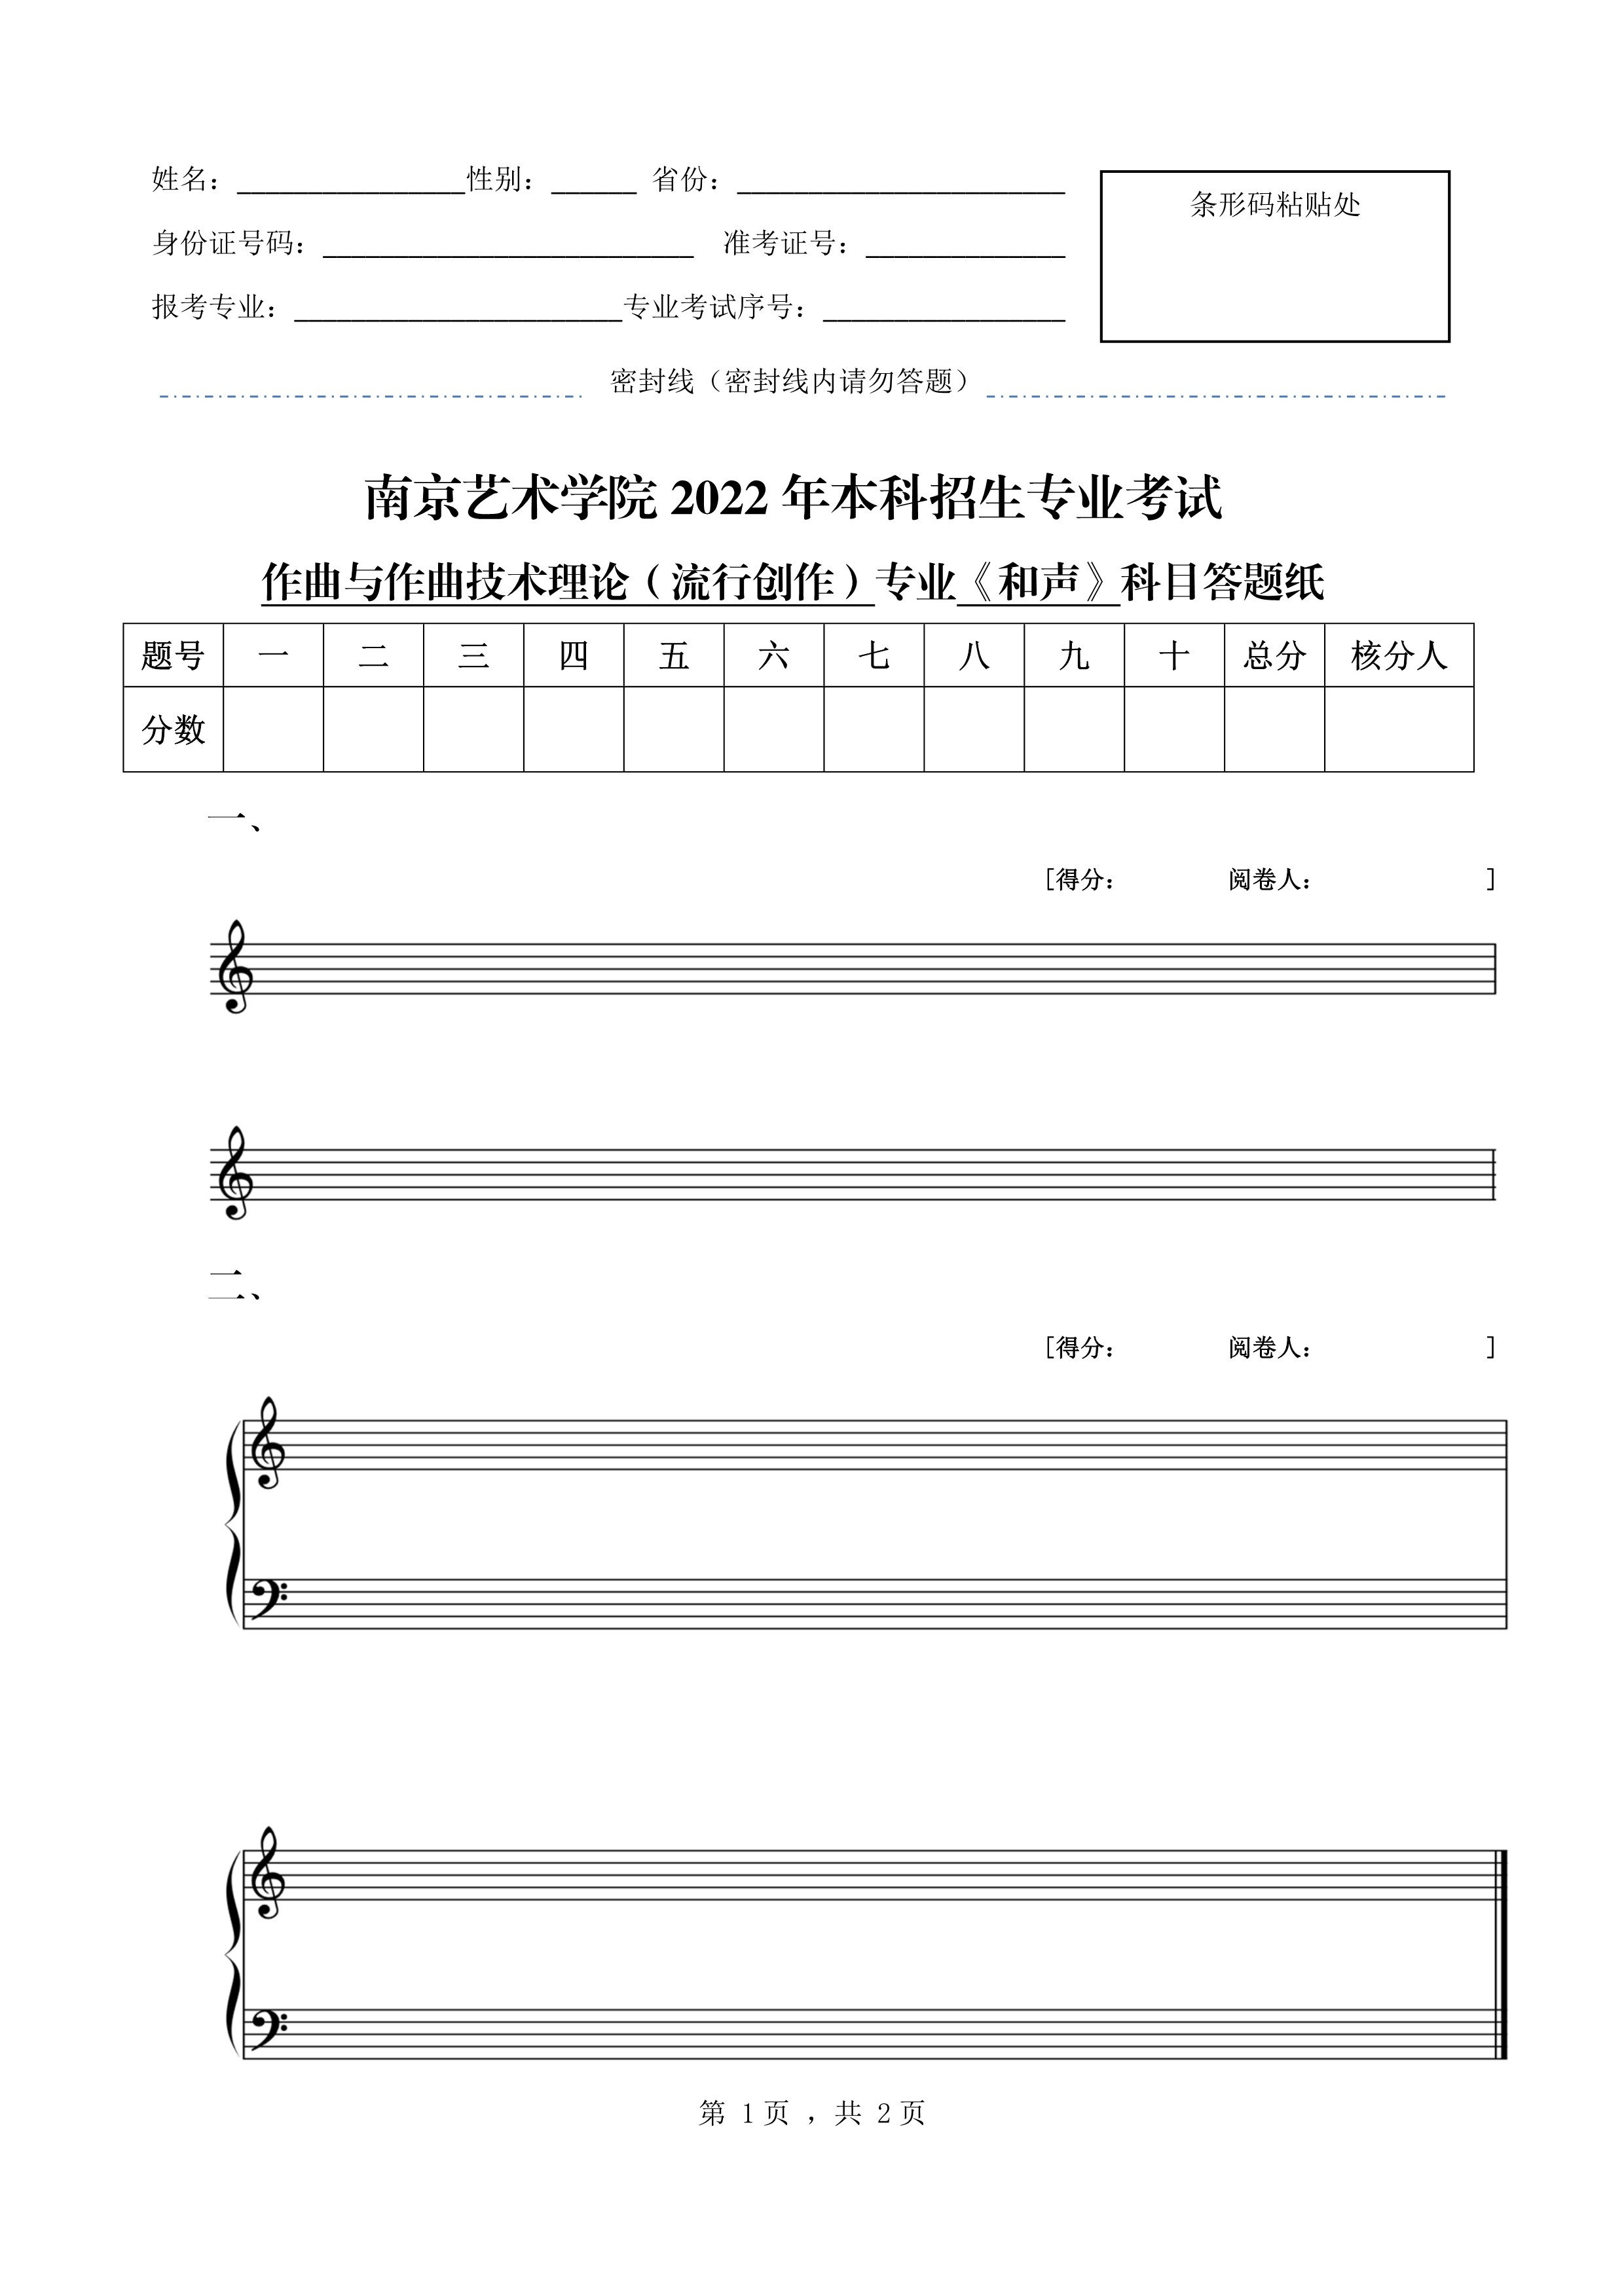 南京艺术学院2022年本科招生作曲与作曲技术理论（流行创作）专业《和声》科目考试答题纸_1.jpg